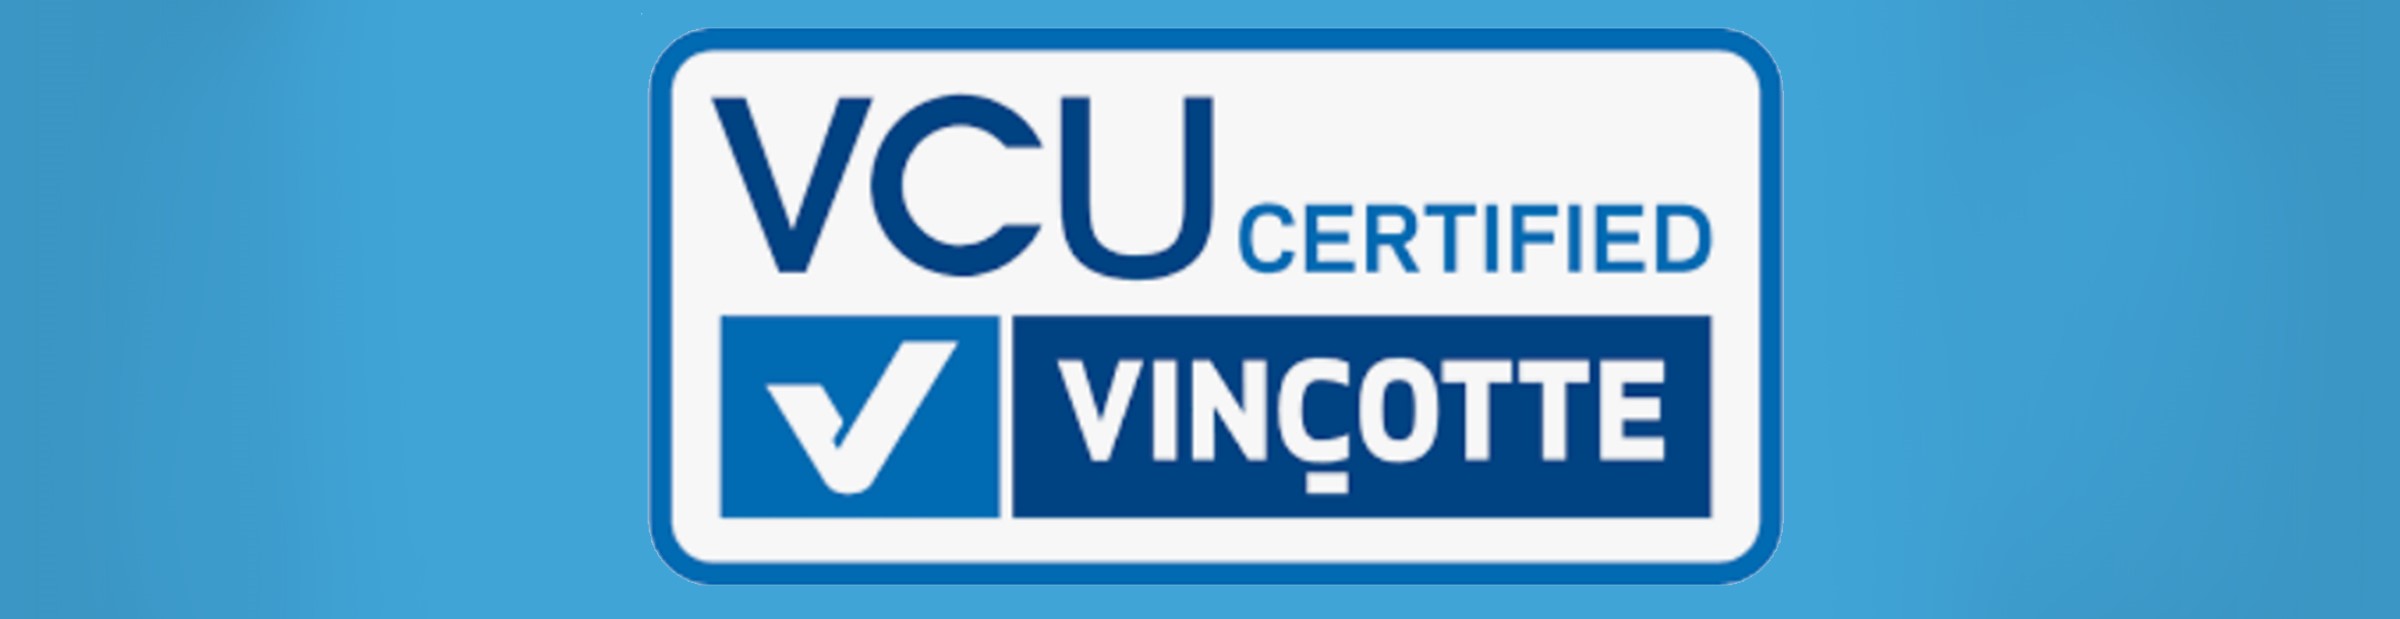 Ontdek hoe Unique zich onderscheidt met het VCU-certificaat, de veiligheidsnorm voor uitzendbureaus